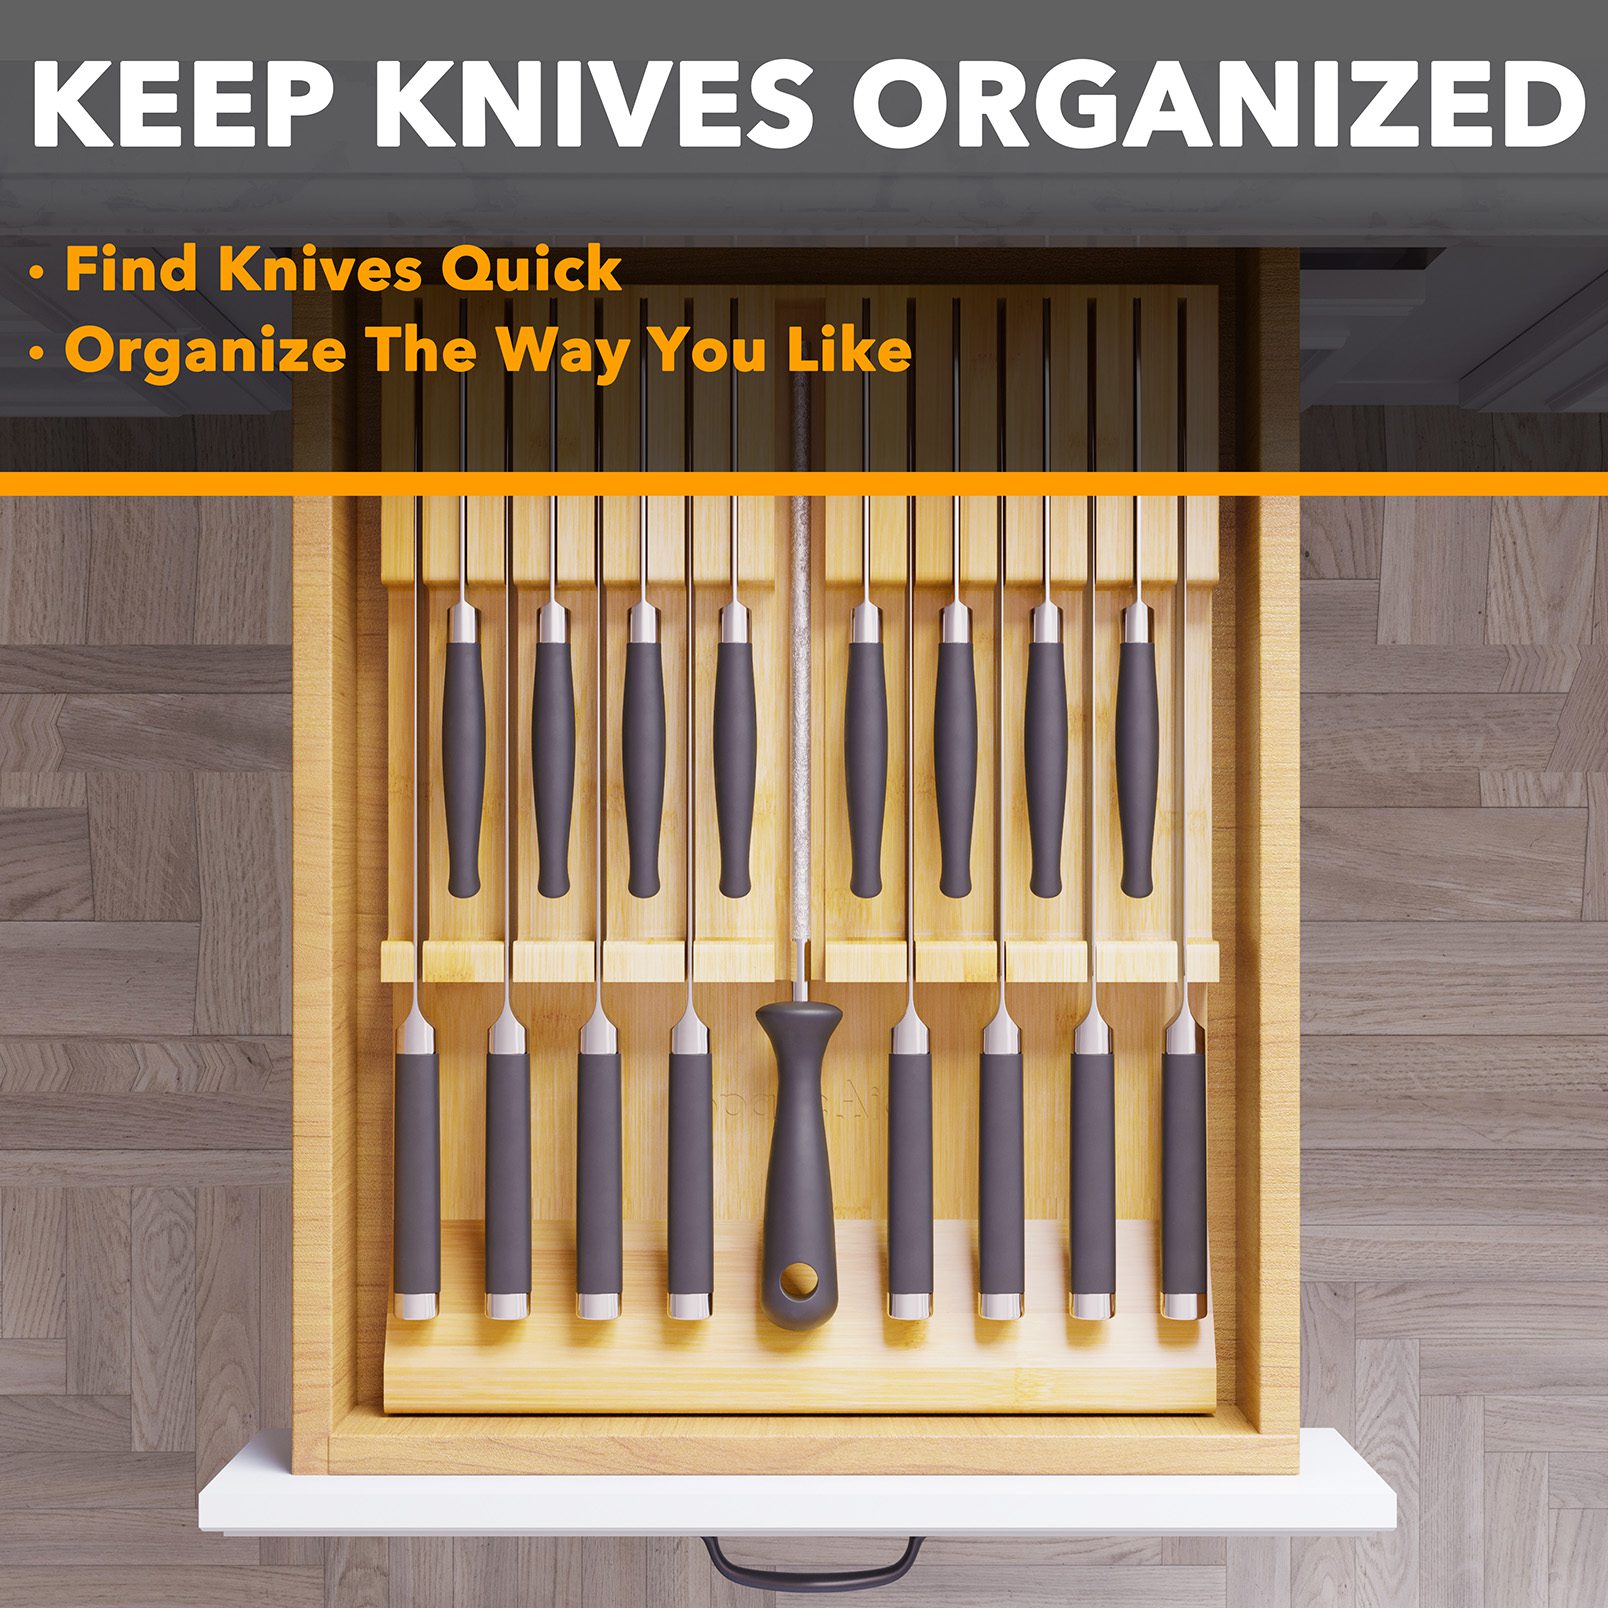  knife drawer organizer